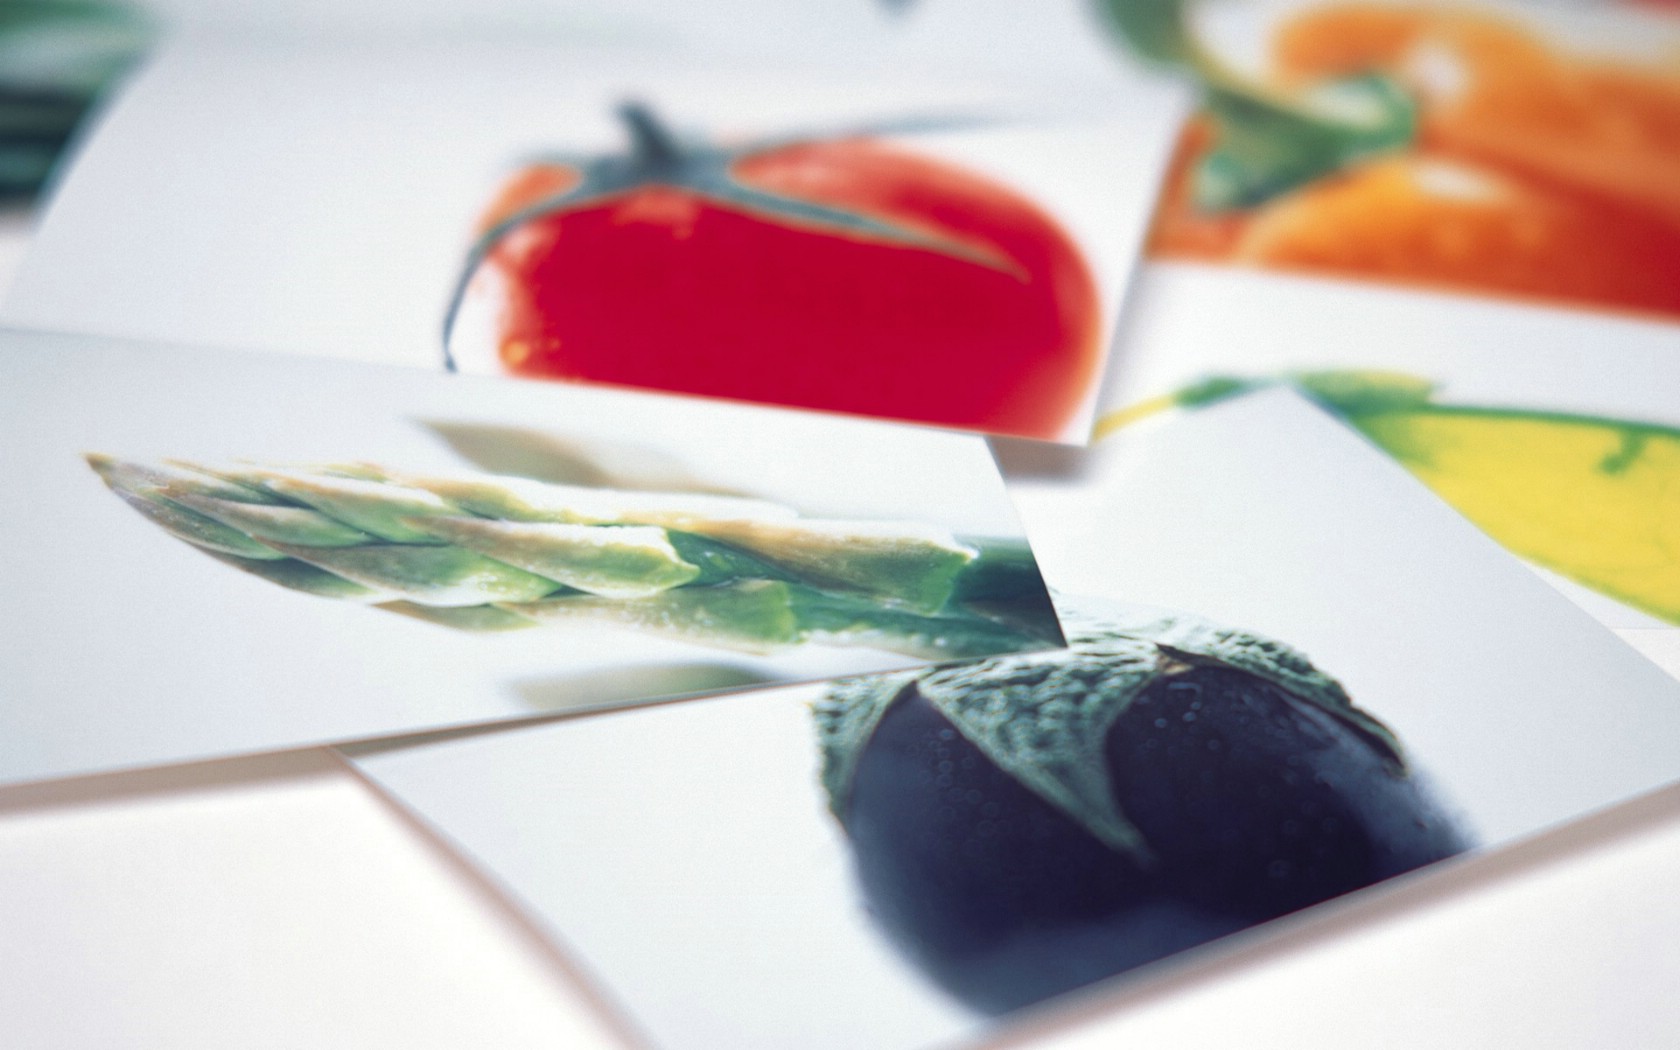 壁纸1680x1050 Photo manipulation of Fruits and Vegetables壁纸 精致水果蔬菜摄影壁纸壁纸 精致水果蔬菜摄影壁纸图片 精致水果蔬菜摄影壁纸素材 摄影壁纸 摄影图库 摄影图片素材桌面壁纸